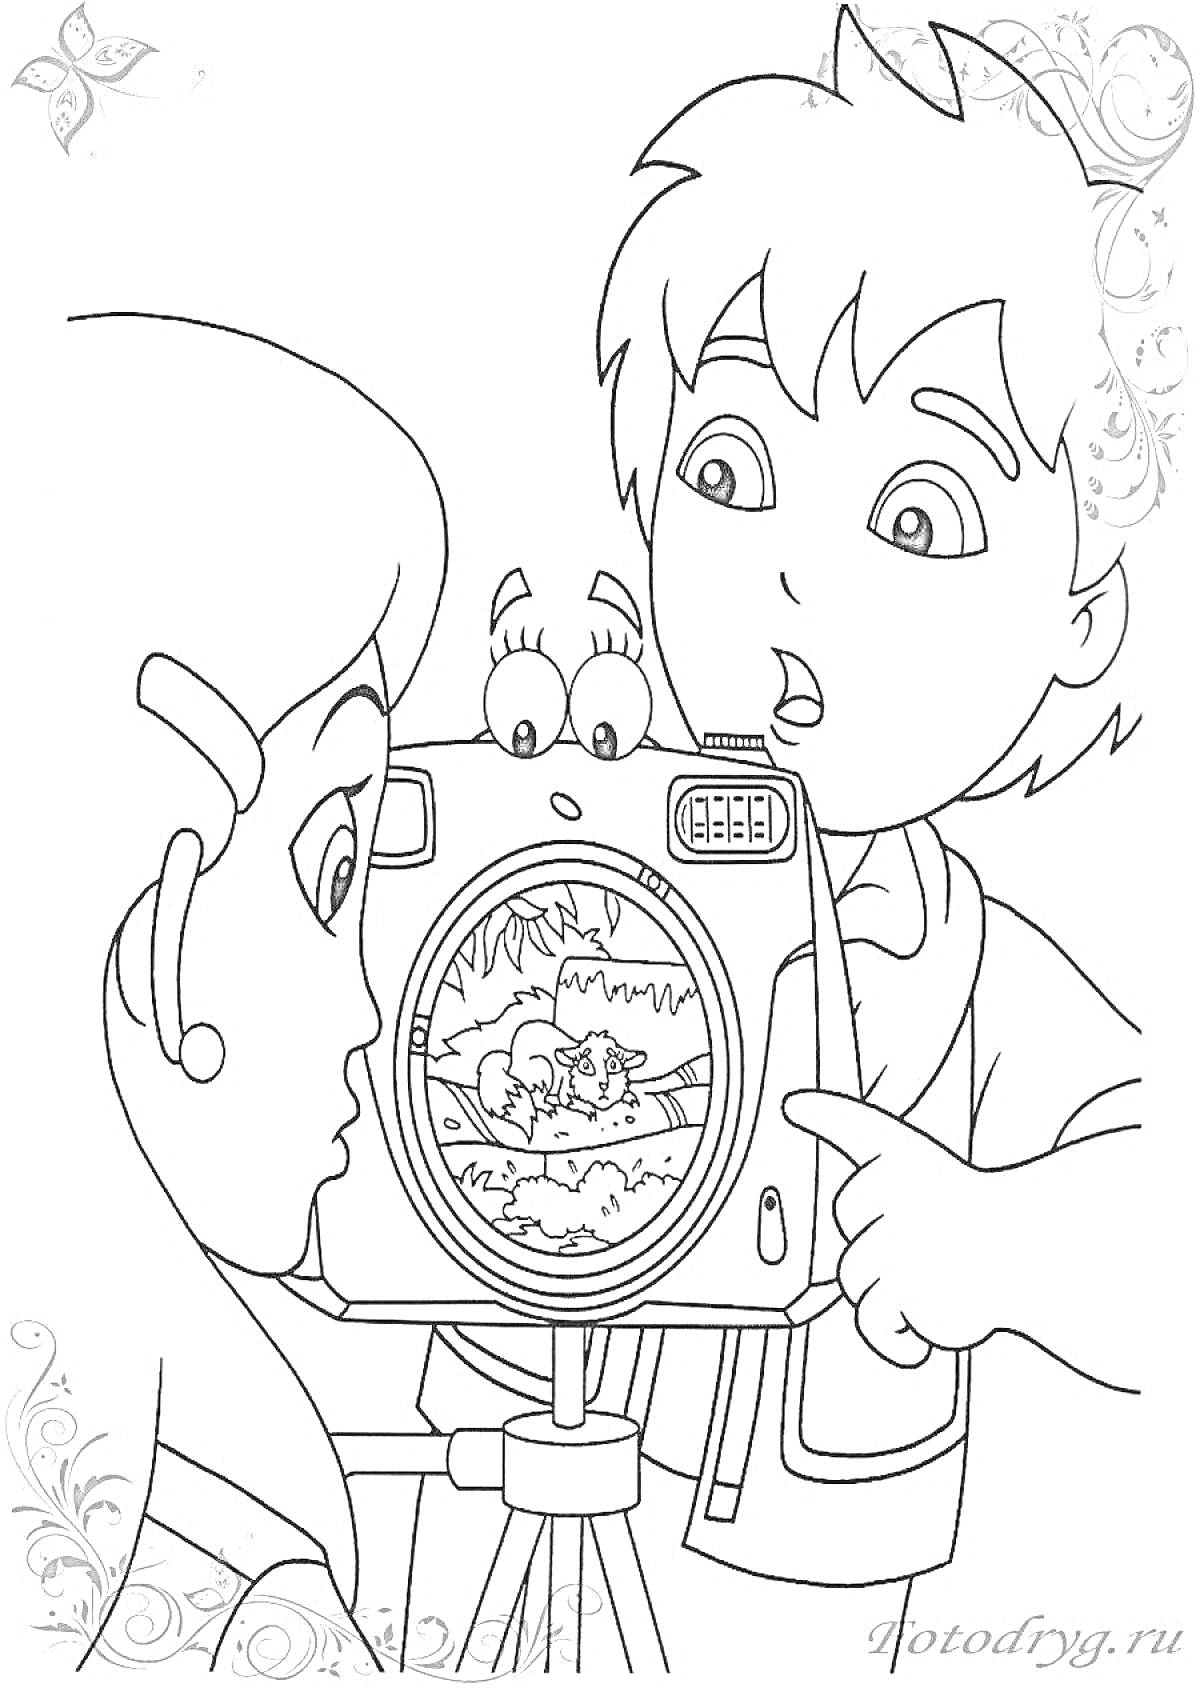 Раскраска Мальчик и девочка смотрят на экран камеры, на котором изображены животные